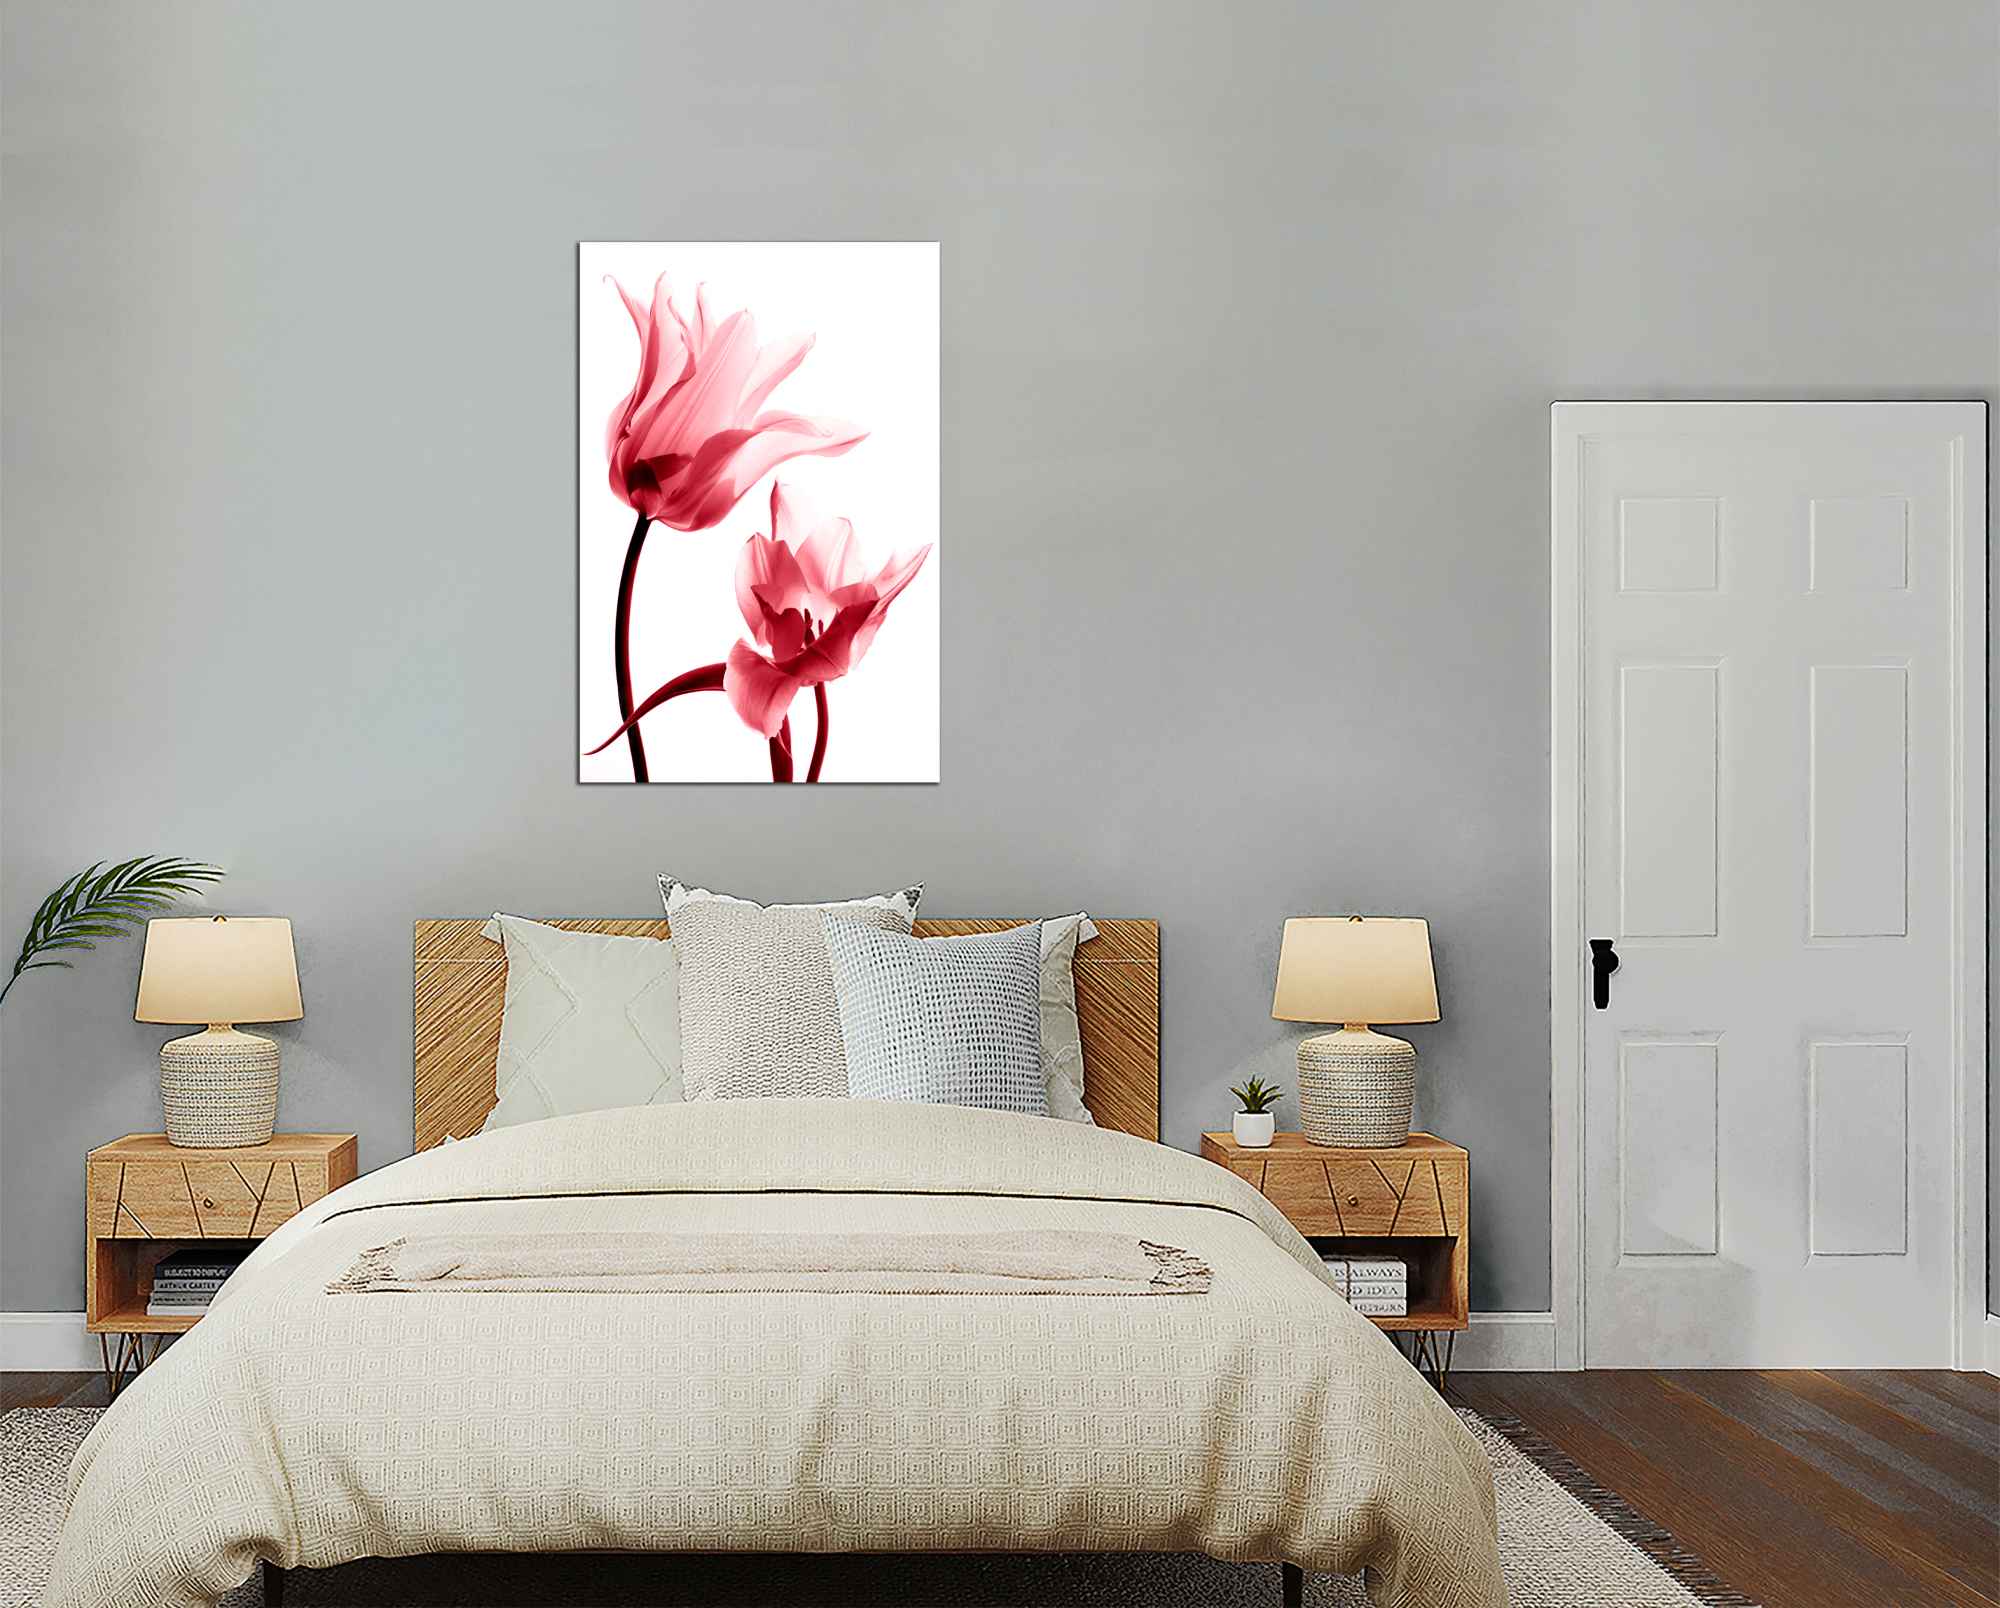 Obdelníkový obraz Červené tulipány